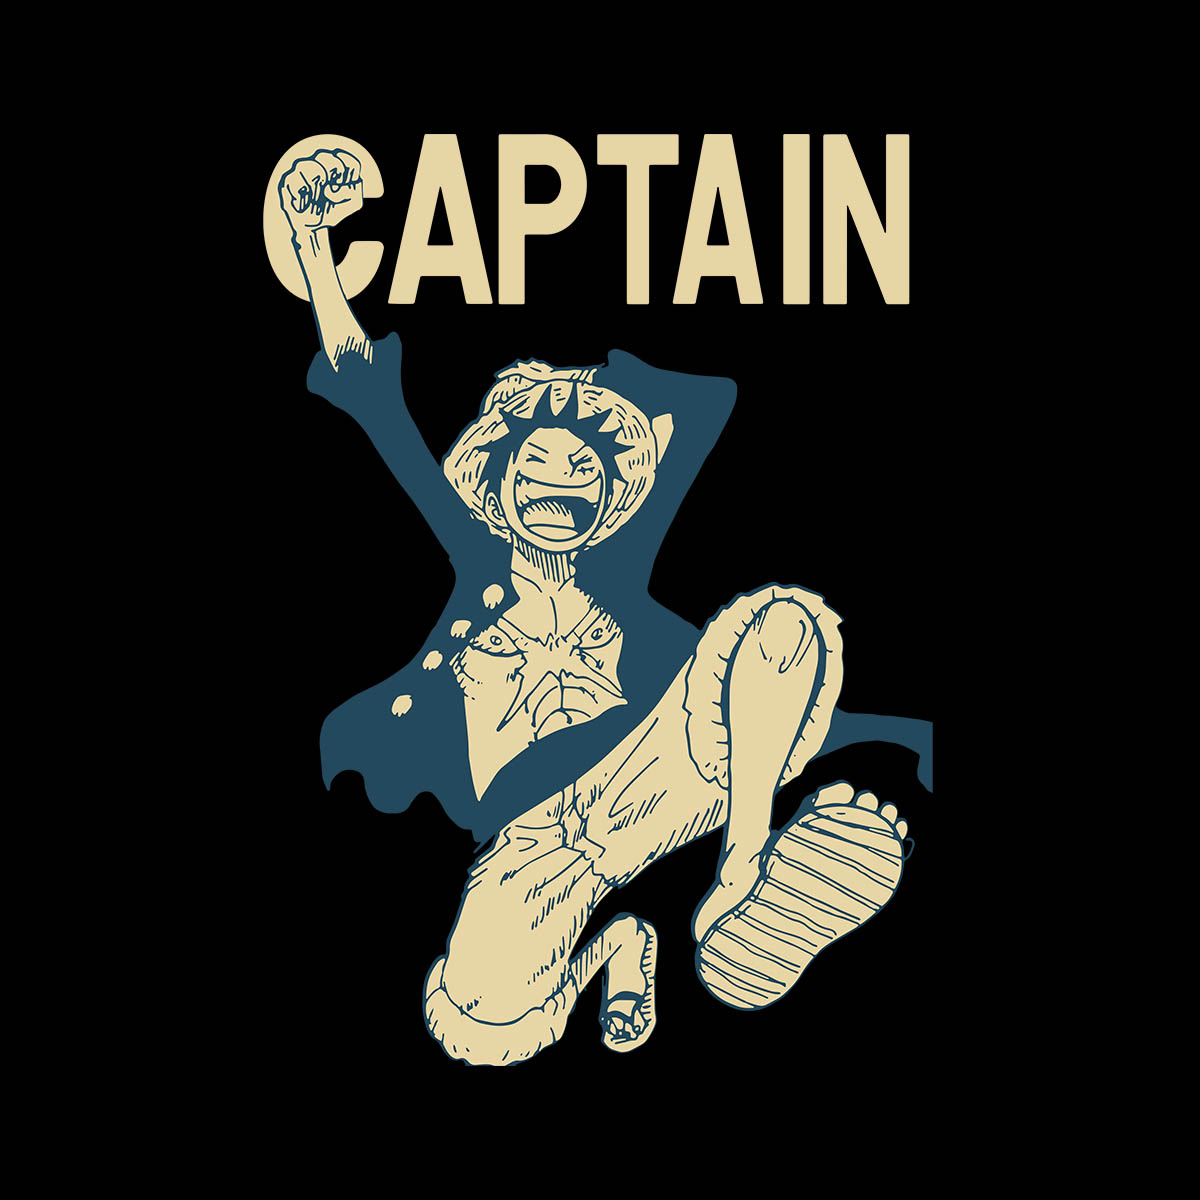 Monkey D. Luffy Captain Anime Manga Japanese  T-shirt for Kids